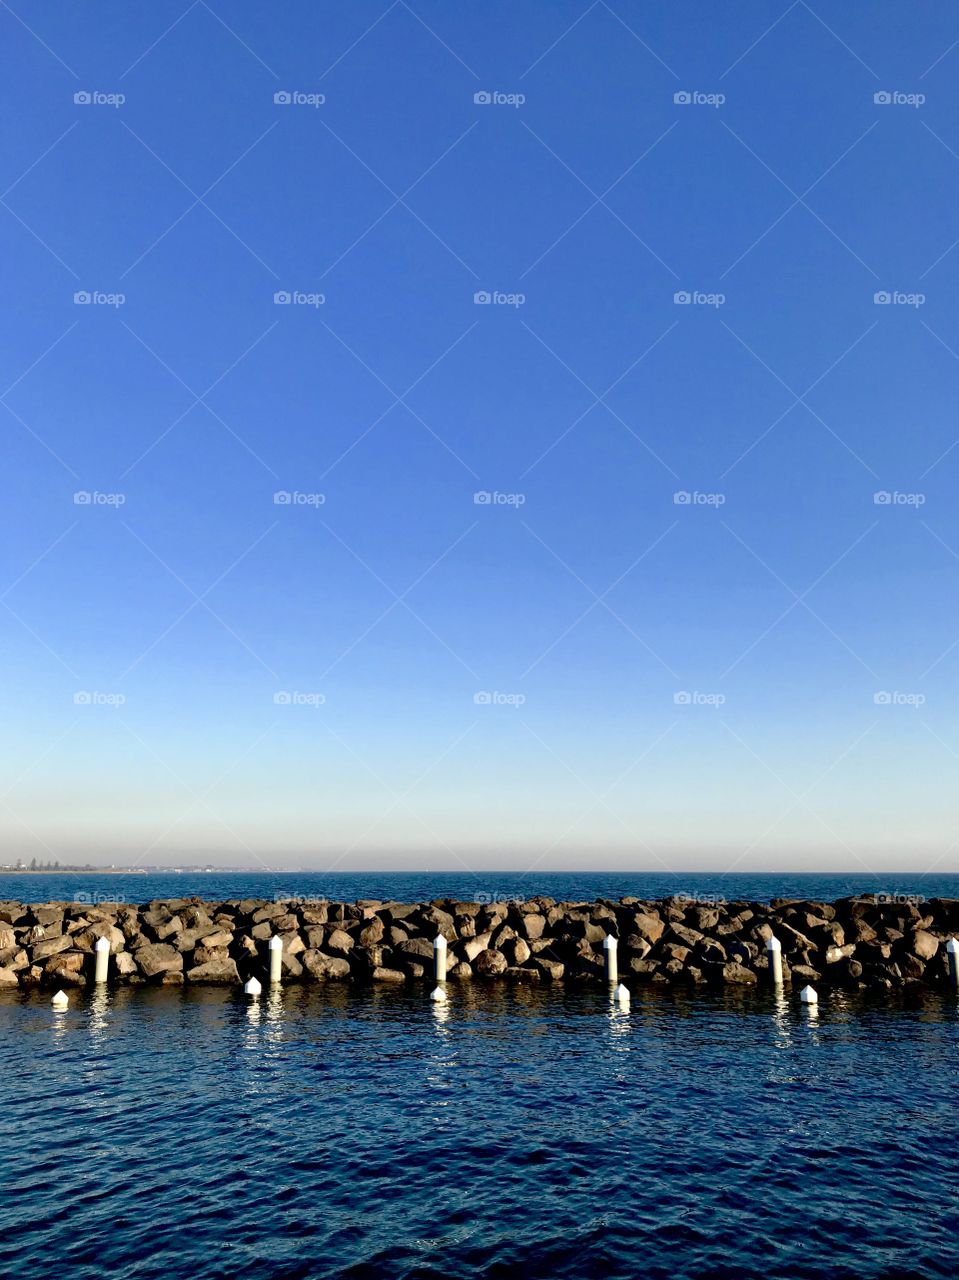 Rocks, pier, barrier, on the ocean 